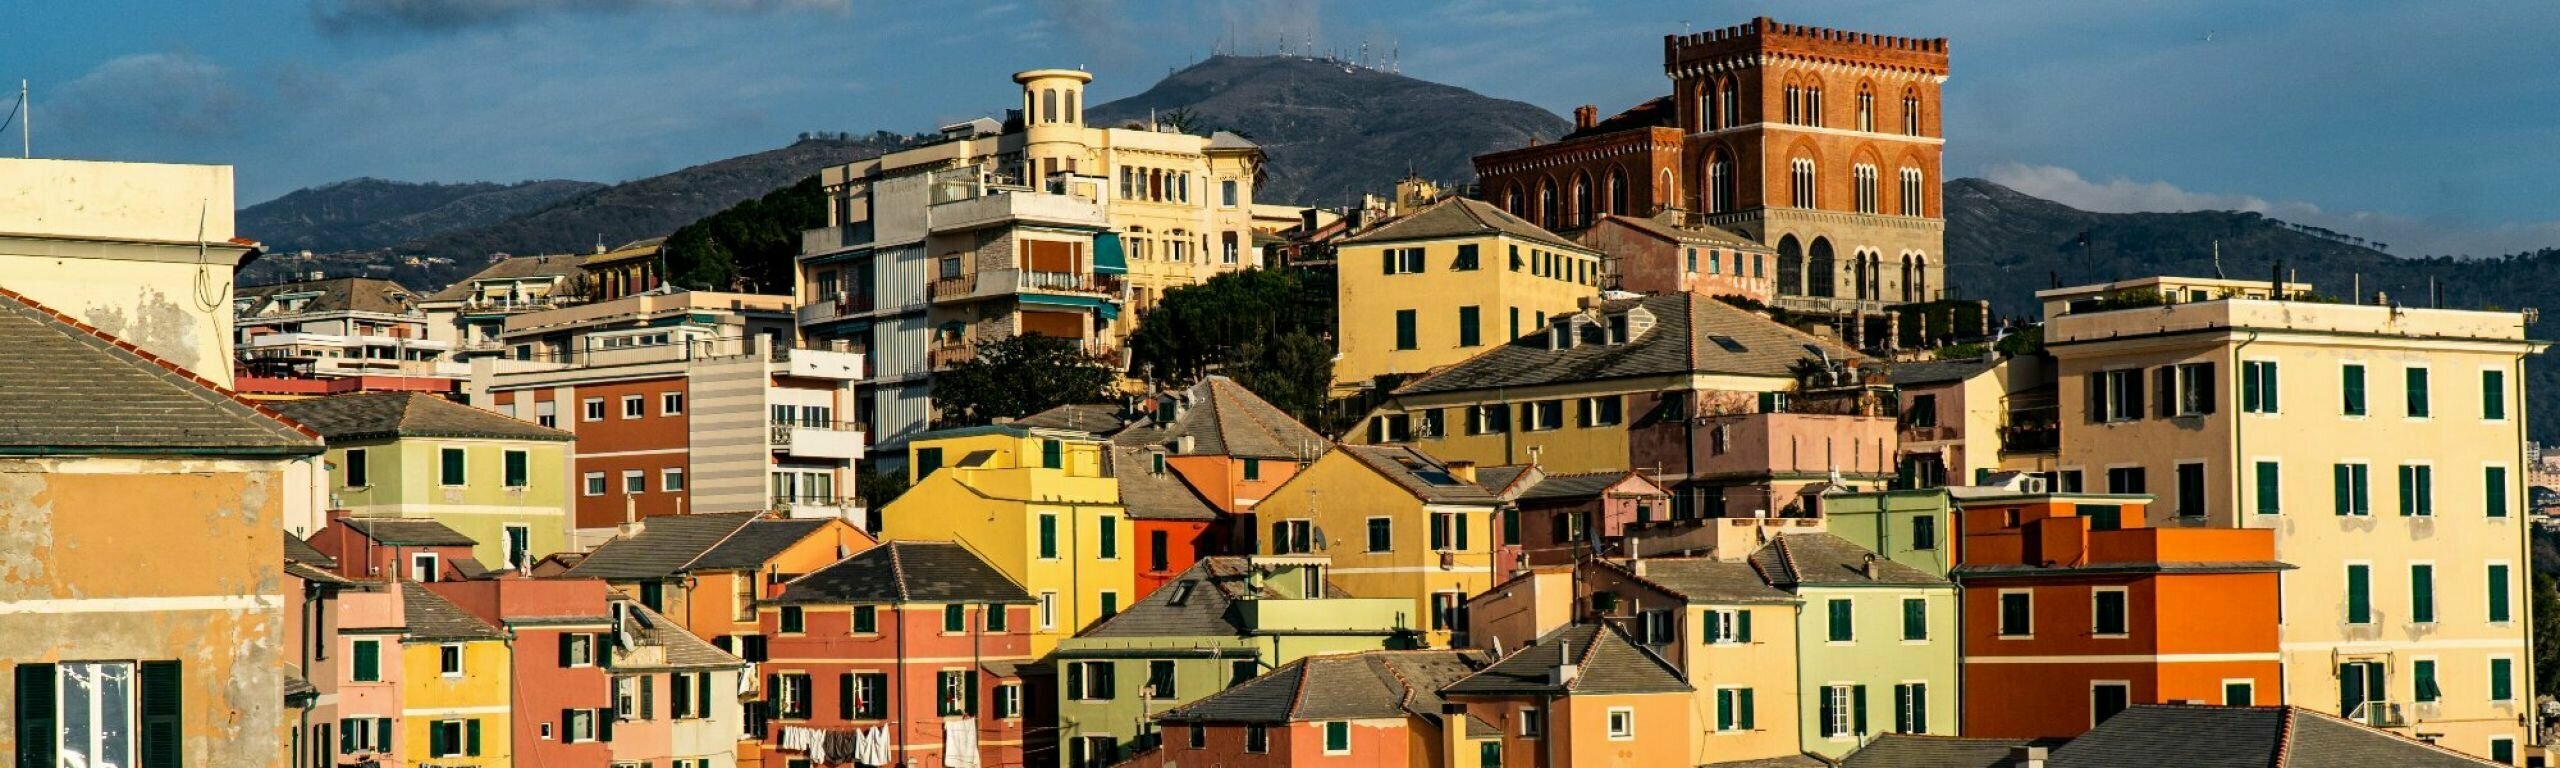 Stadtviertel Boccadasse mit den vielen farbigen Häusern